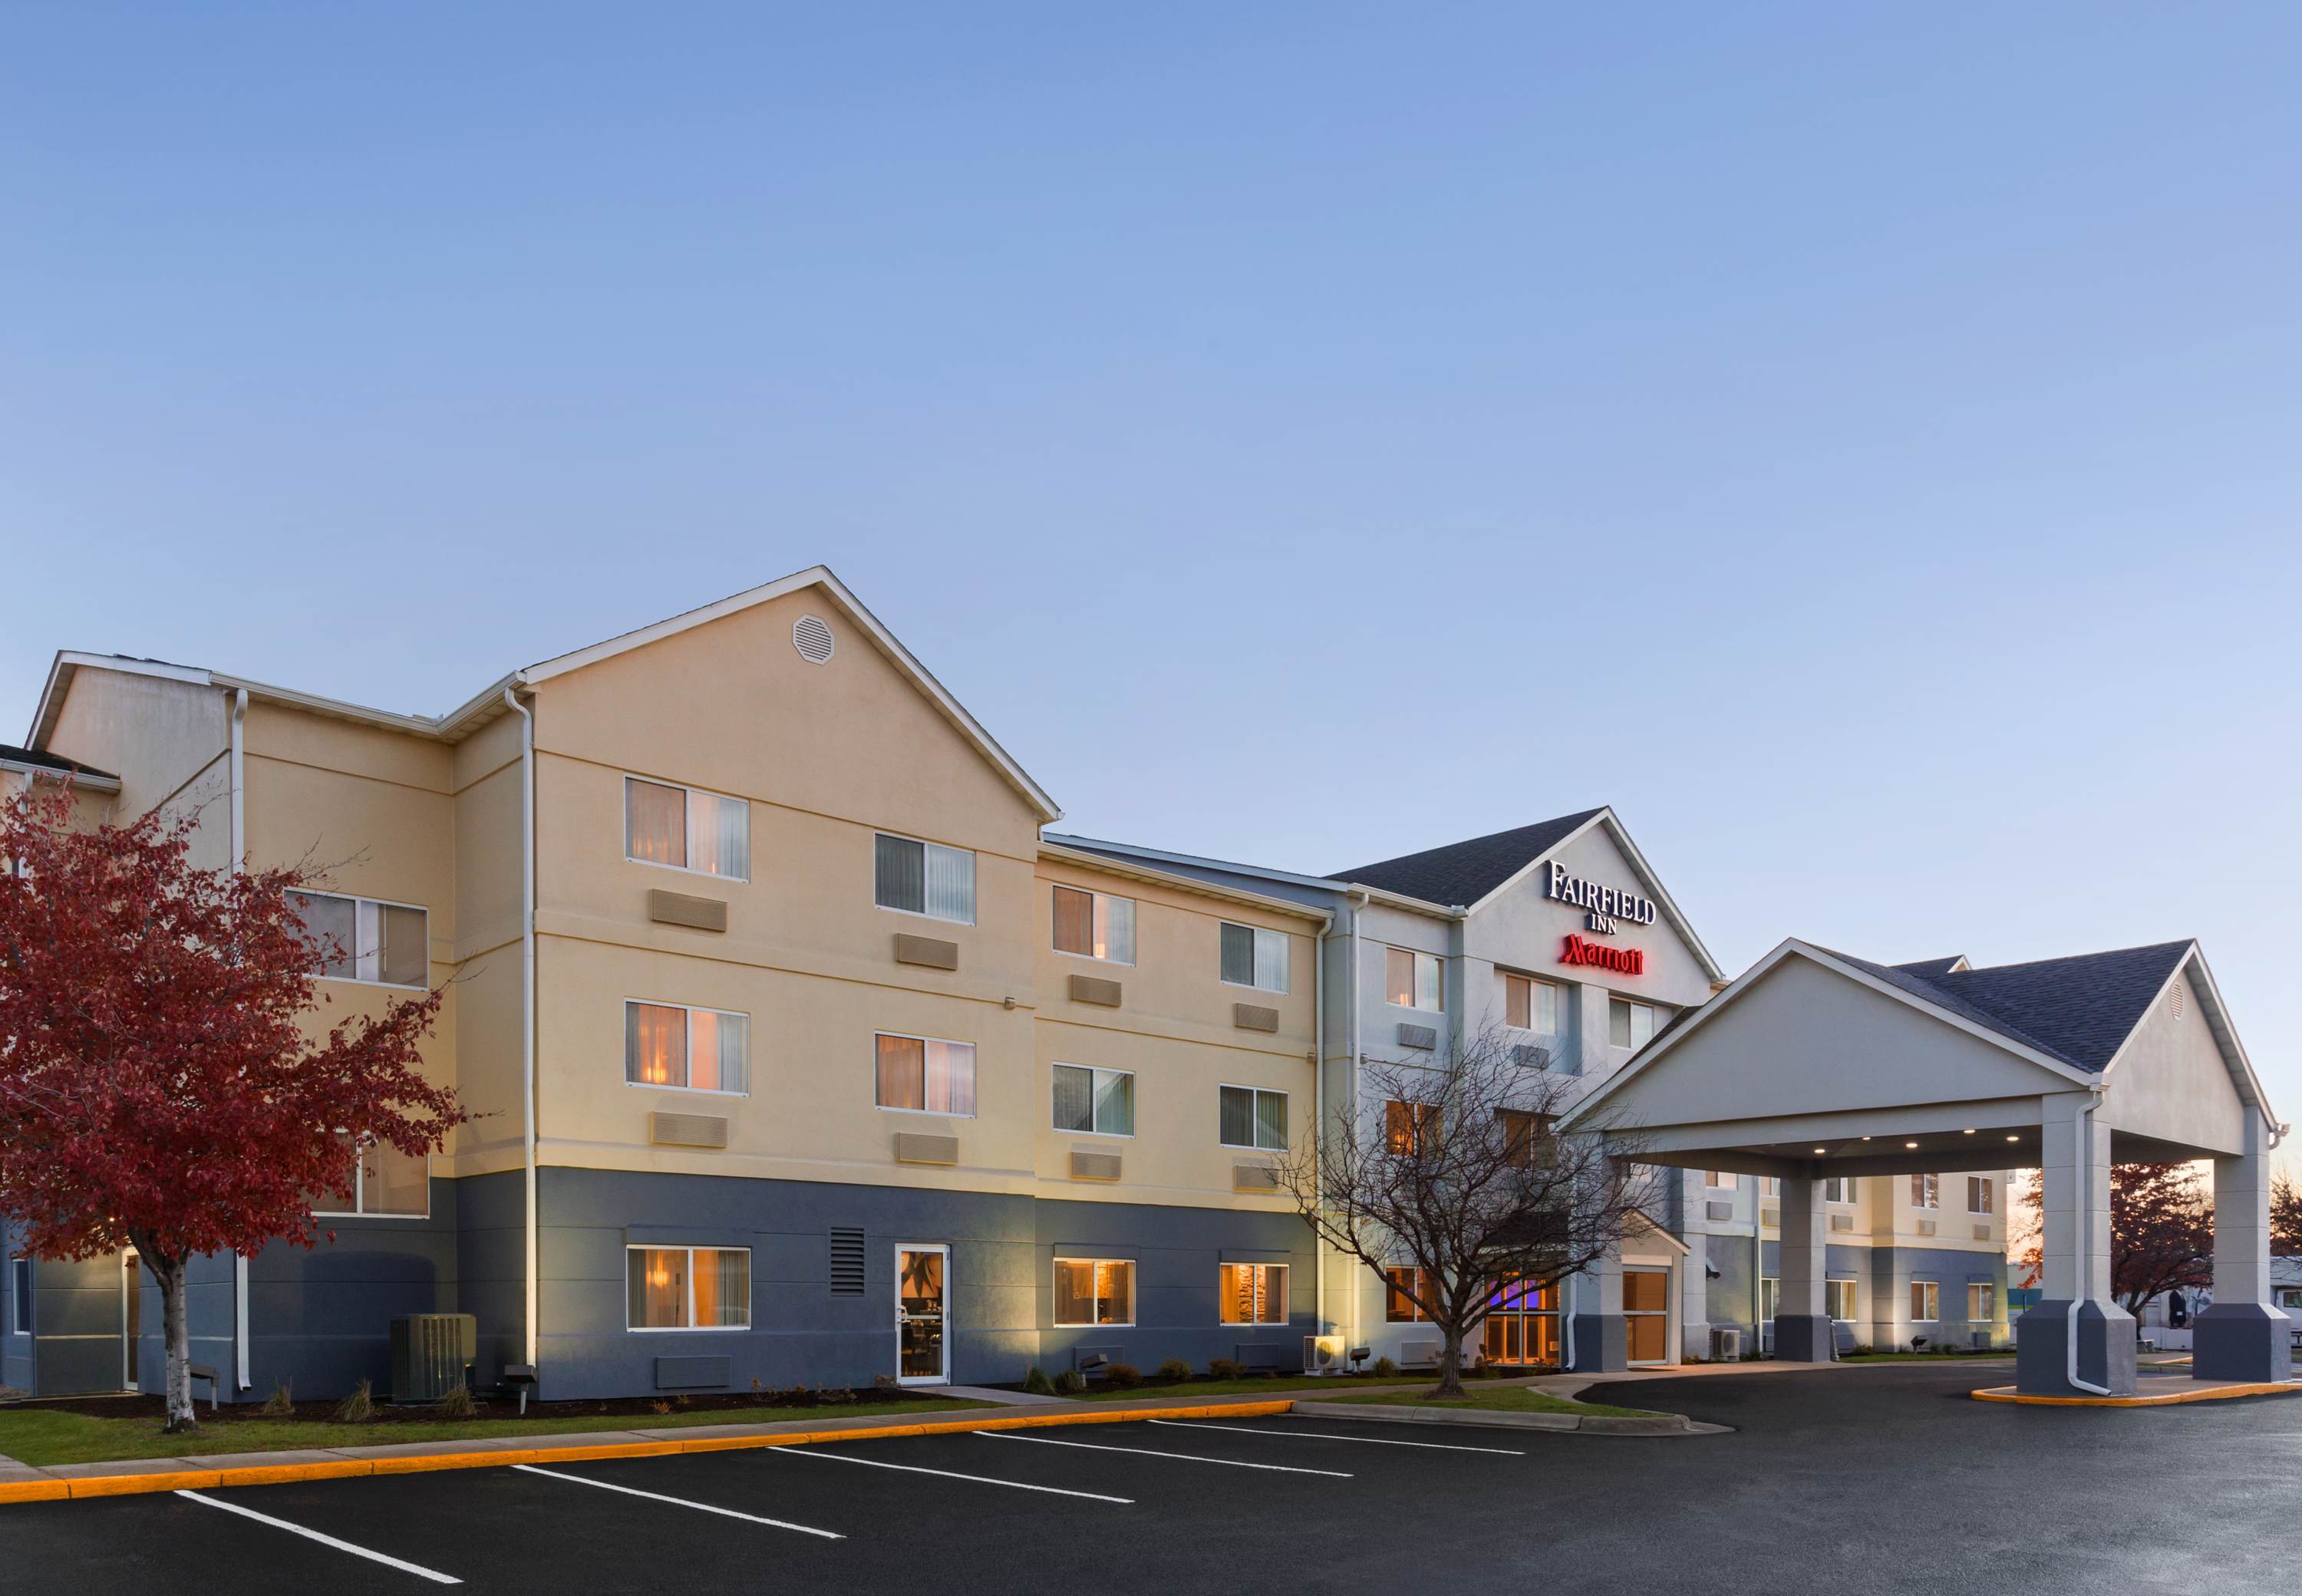 Photo of Fairfield Inn & Suites by Marriott Mankato, Mankato, MN